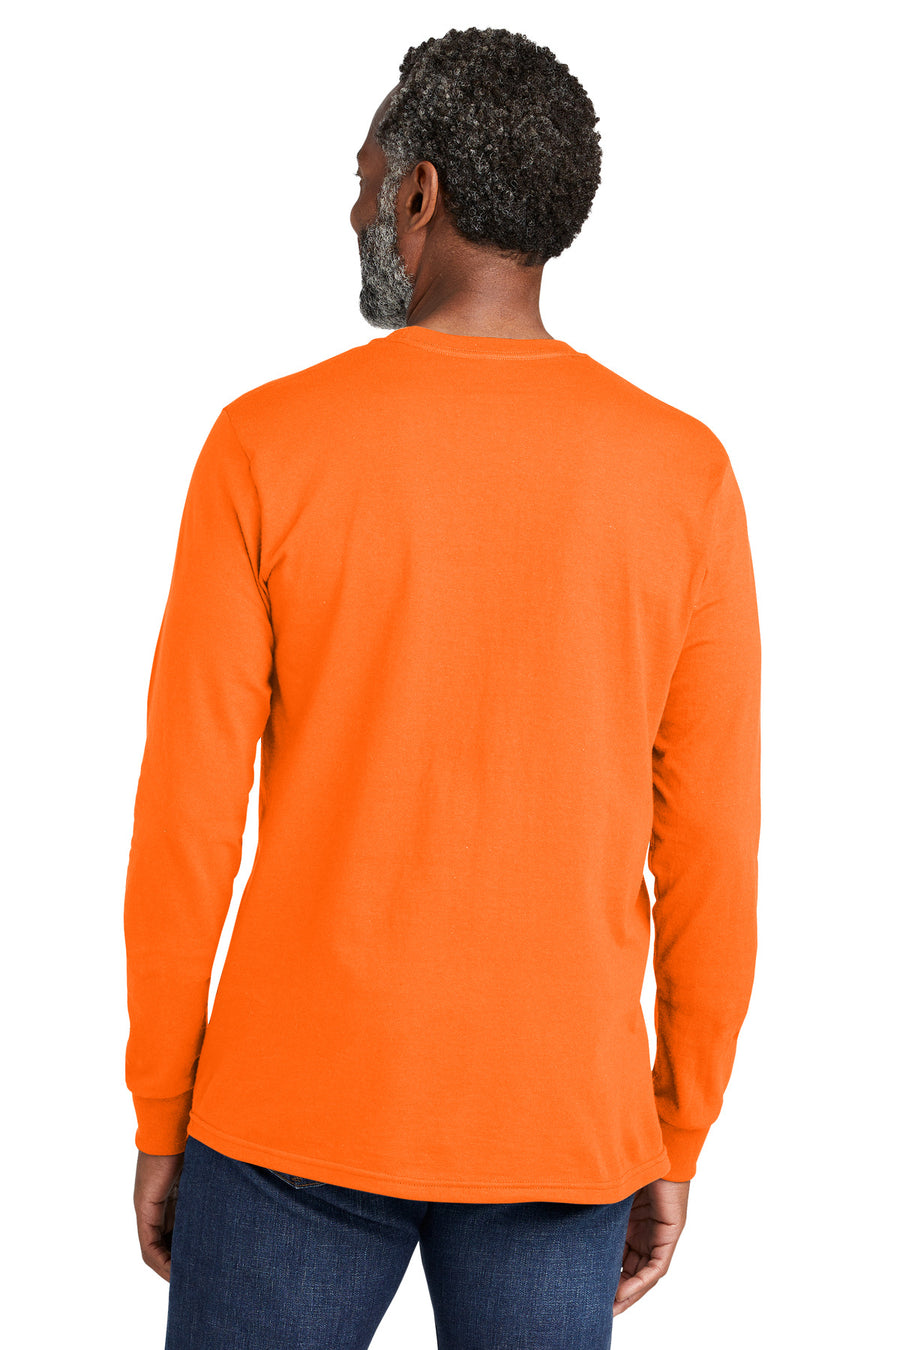 VL100LS-Safety Orange-back_model